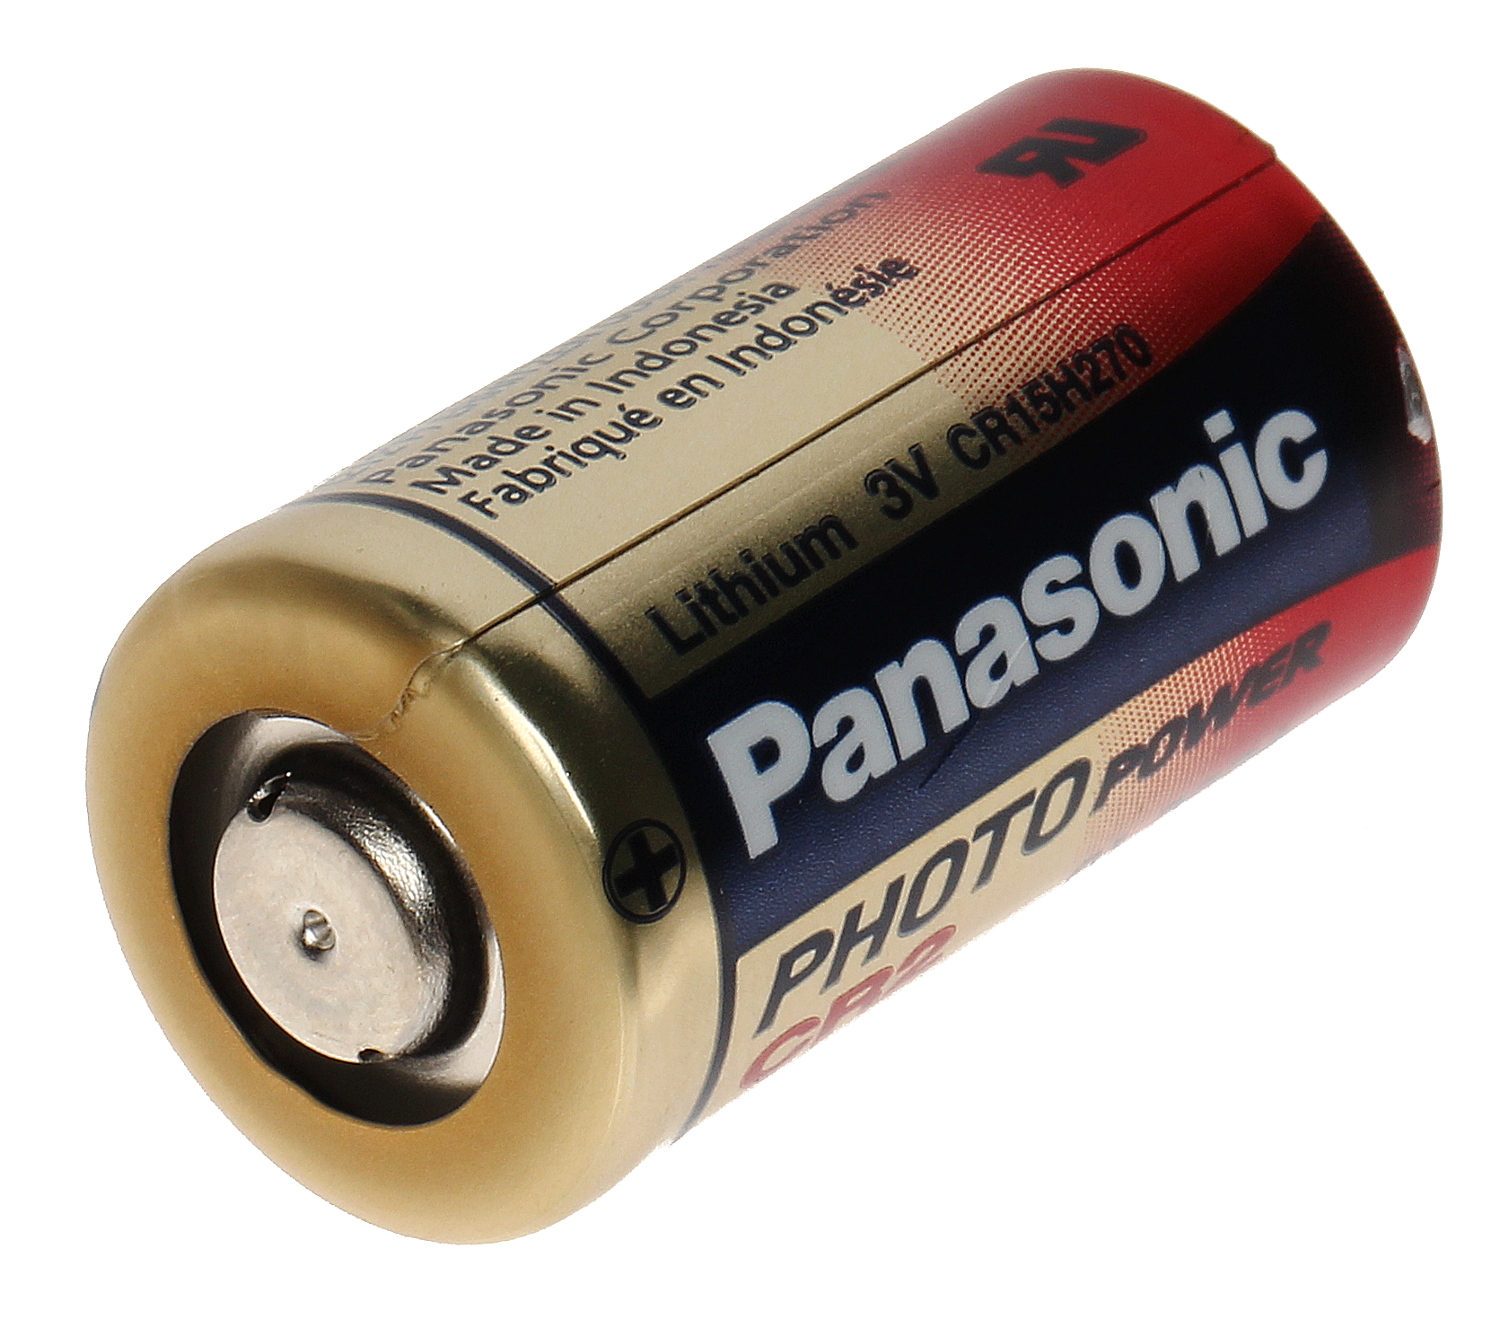 Panasonic cr2 EP batería de litio pilas baterías 